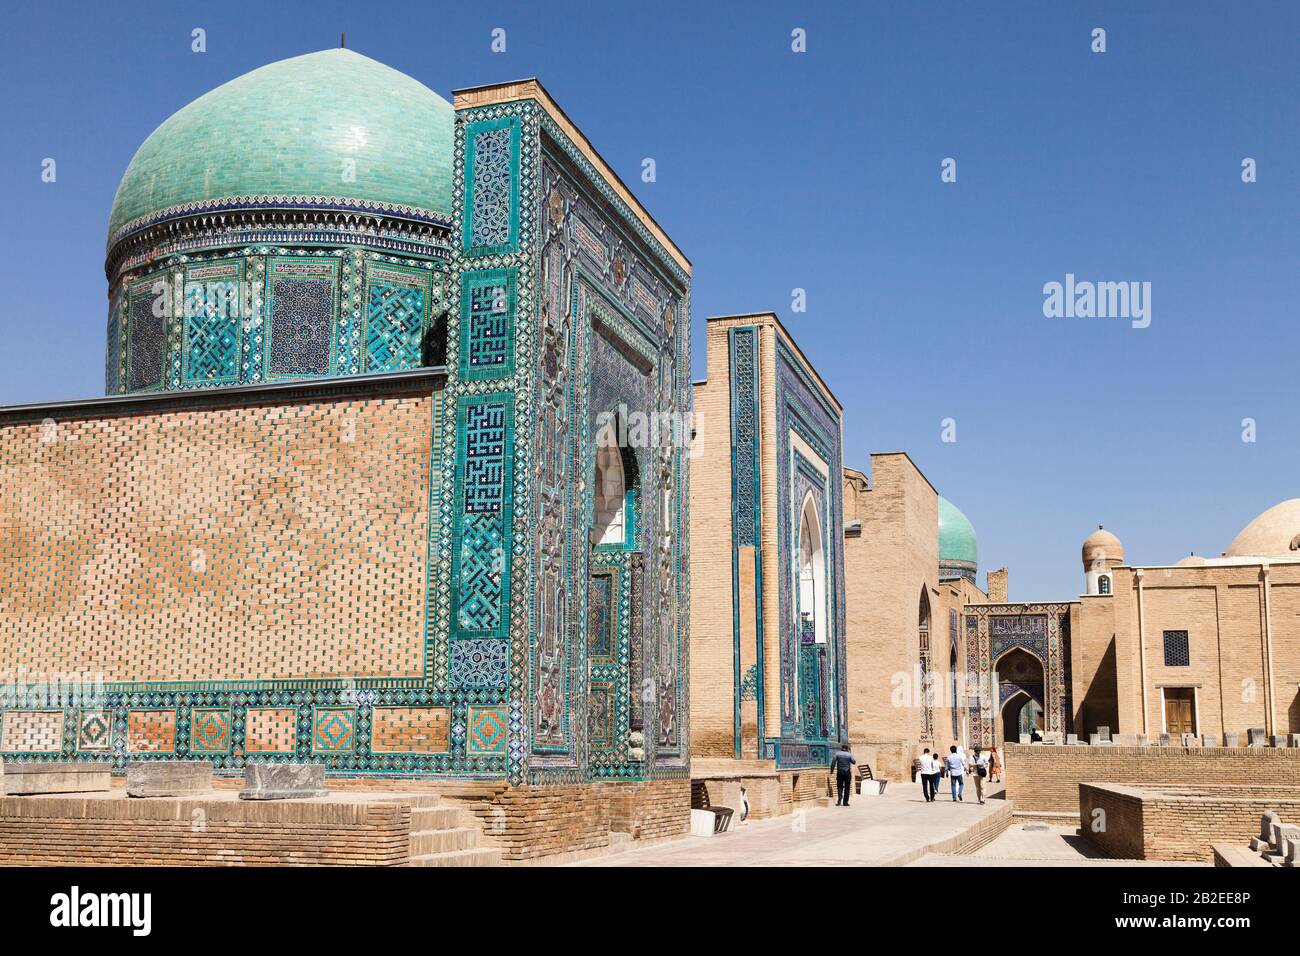 Shah-i-Zinda necropolis, Shahi Zinda Tombs, Samarkand, Uzbekistan, Central Asia, Asia Stock Photo